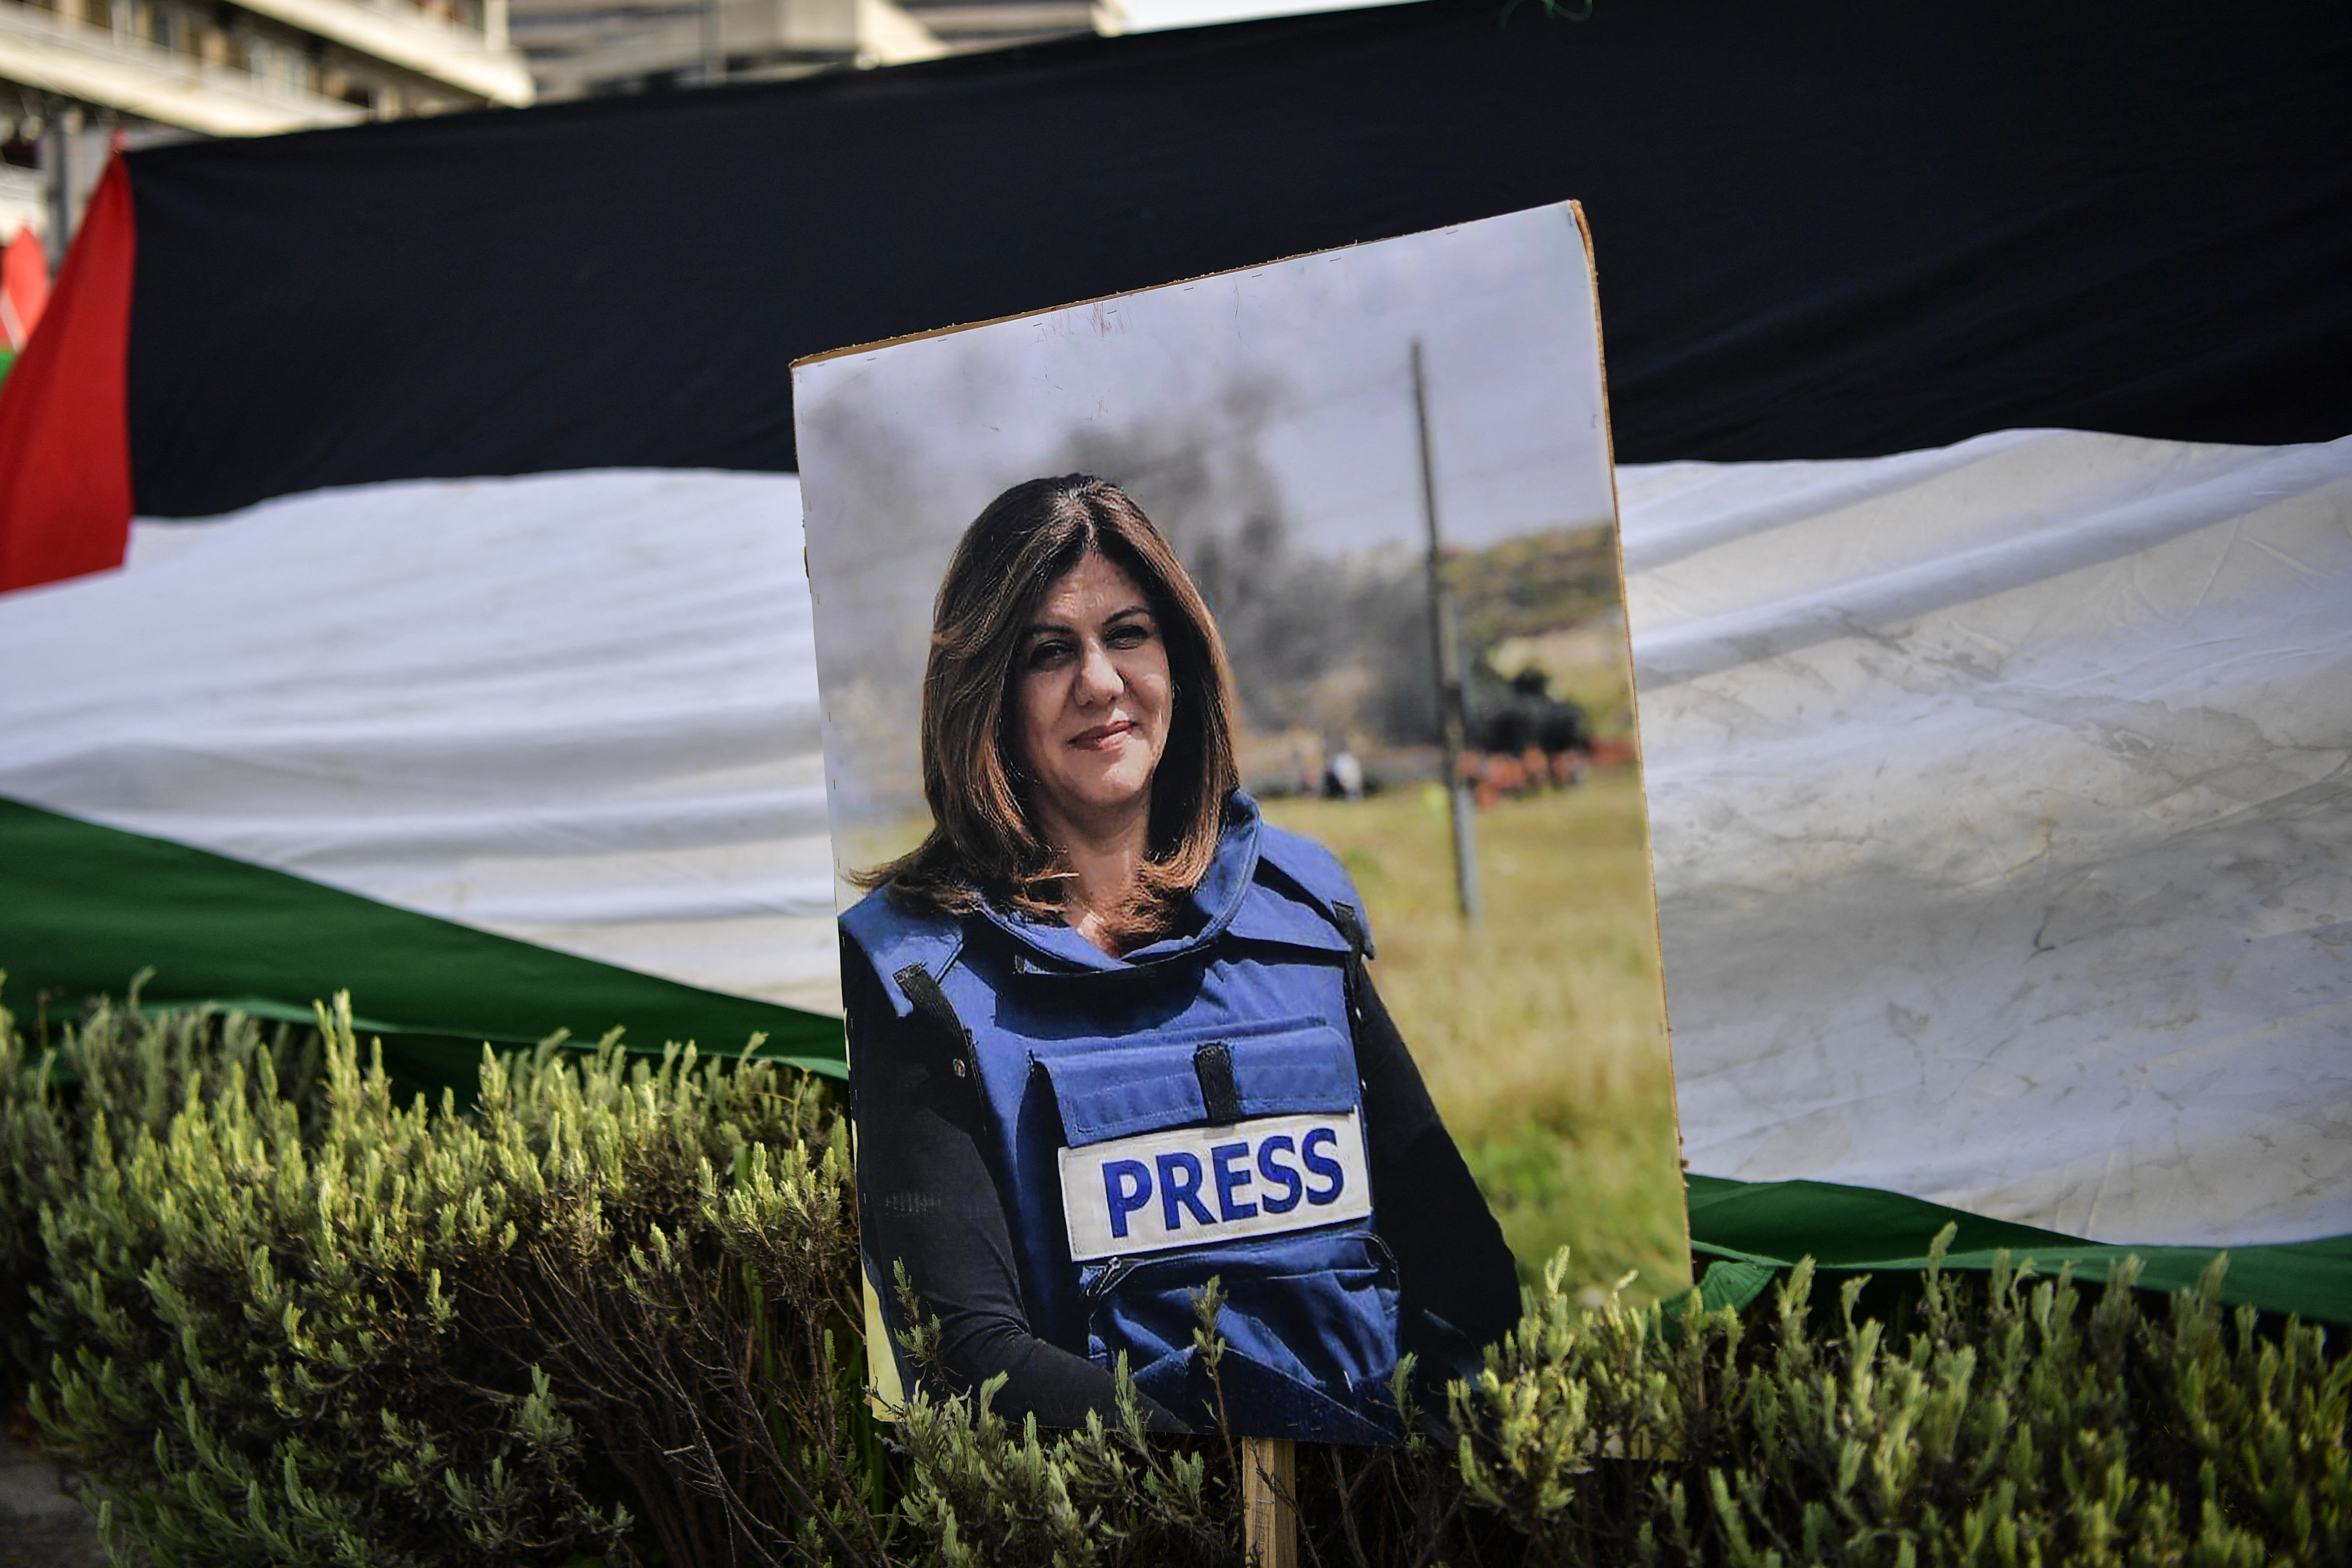 Az izraeli hadsereg elismerte, hogy valószínűleg izraeli katona lőtte le tévedésből a palesztin újságírónőt